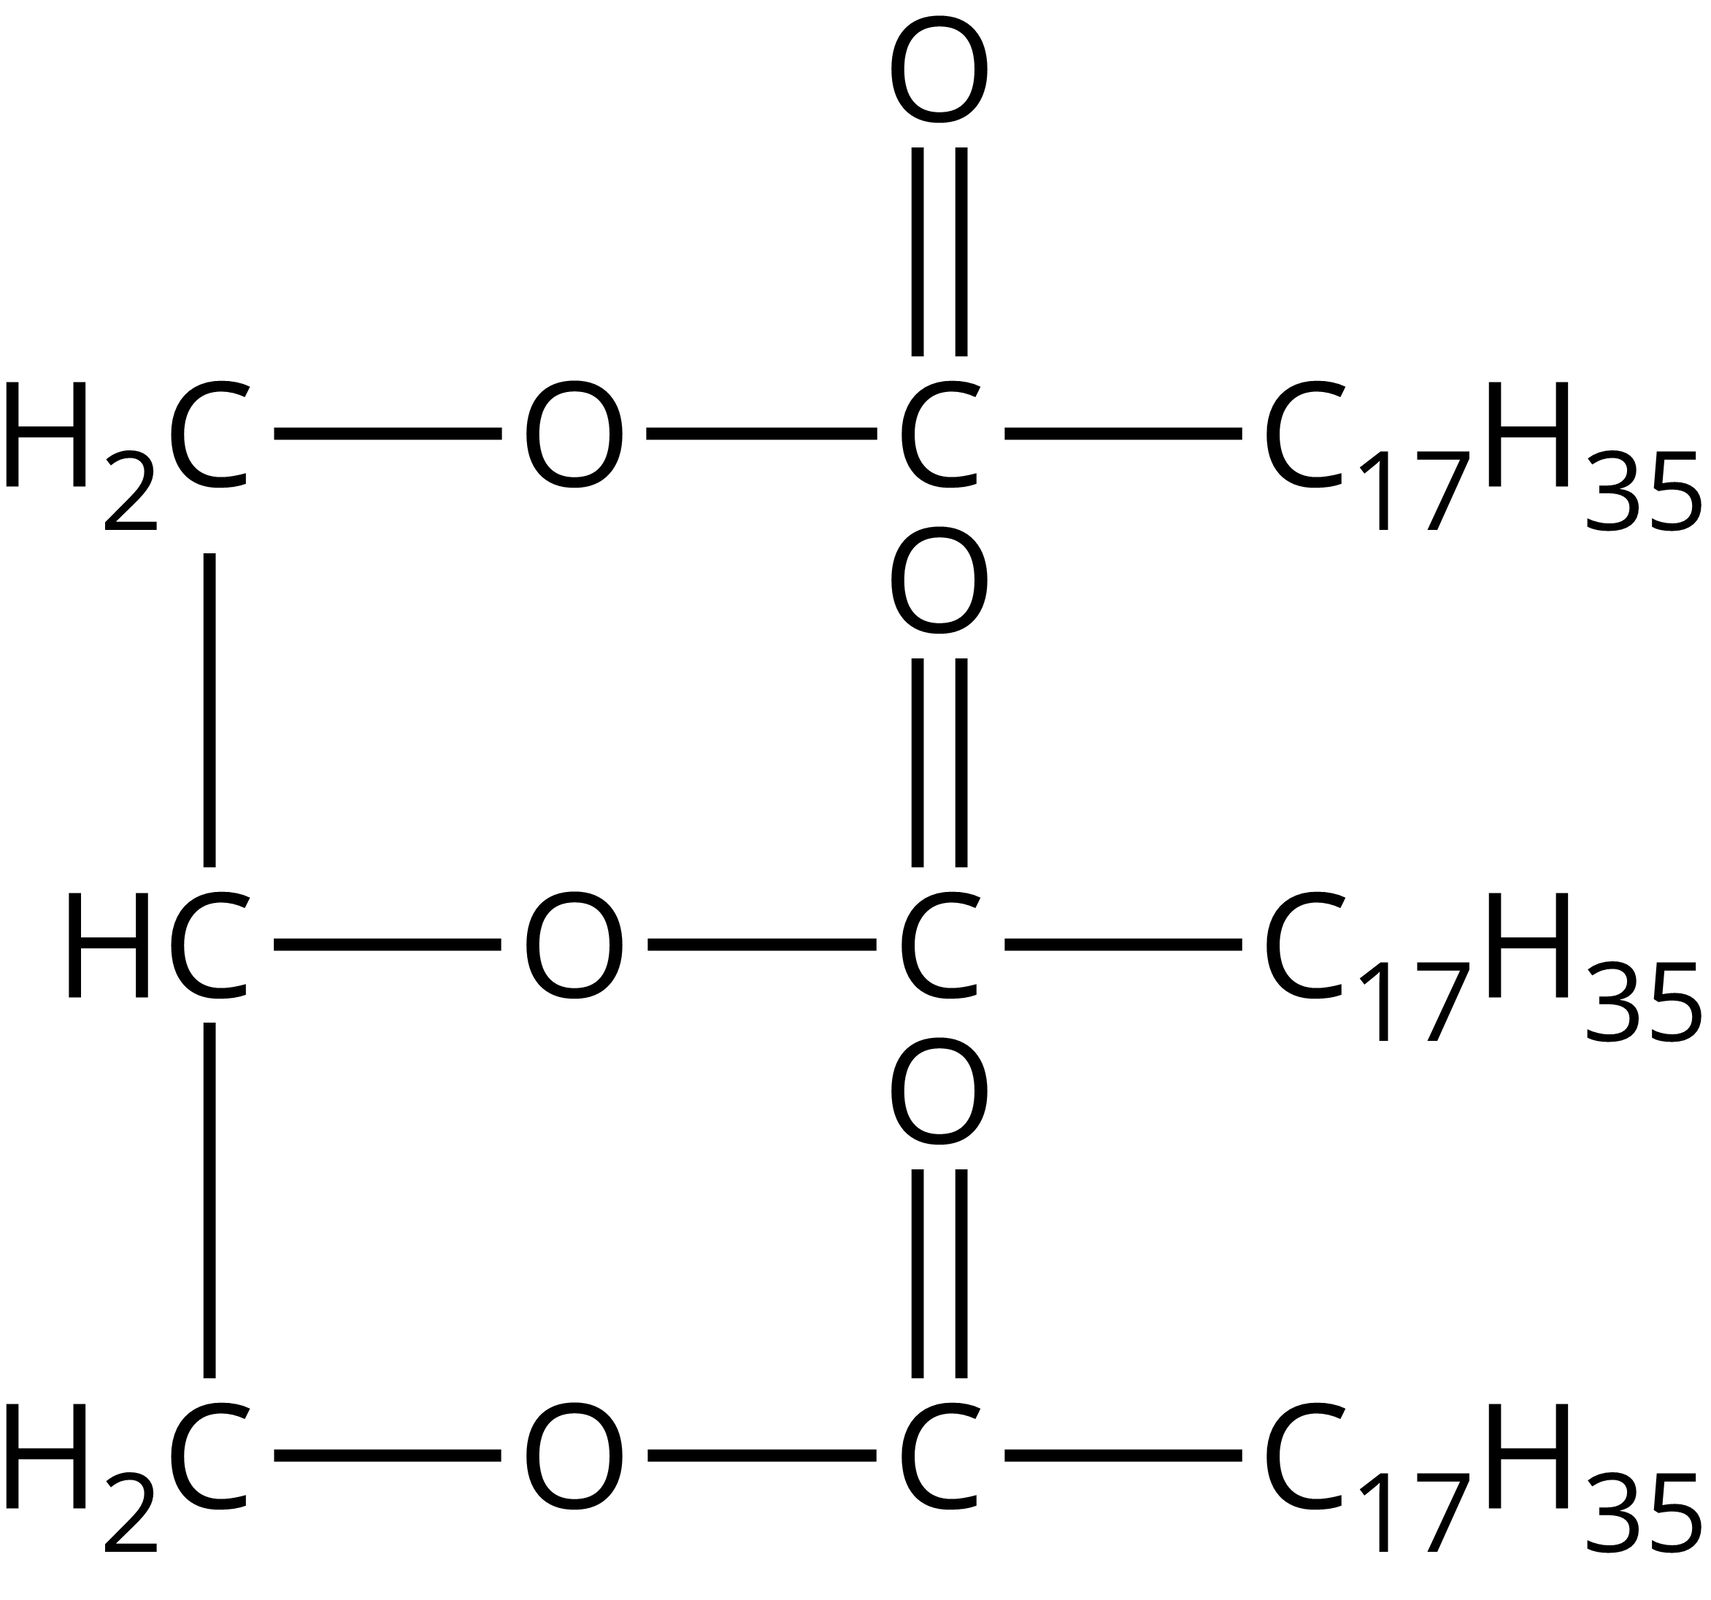 Na ilustracji jest wzór tristearynianu glicerolu: po lewej stronie wzoru z góry na dół łączą się ze sobą następujące grupy - metylenowa z grupą CH, ta z kolei łączy się z kolejną grupą metylenową. Po prawej stronie wzoru każda z nich łączy się z grupą COO, a ta z kolei z grupą                C                 17                       H                 35         .